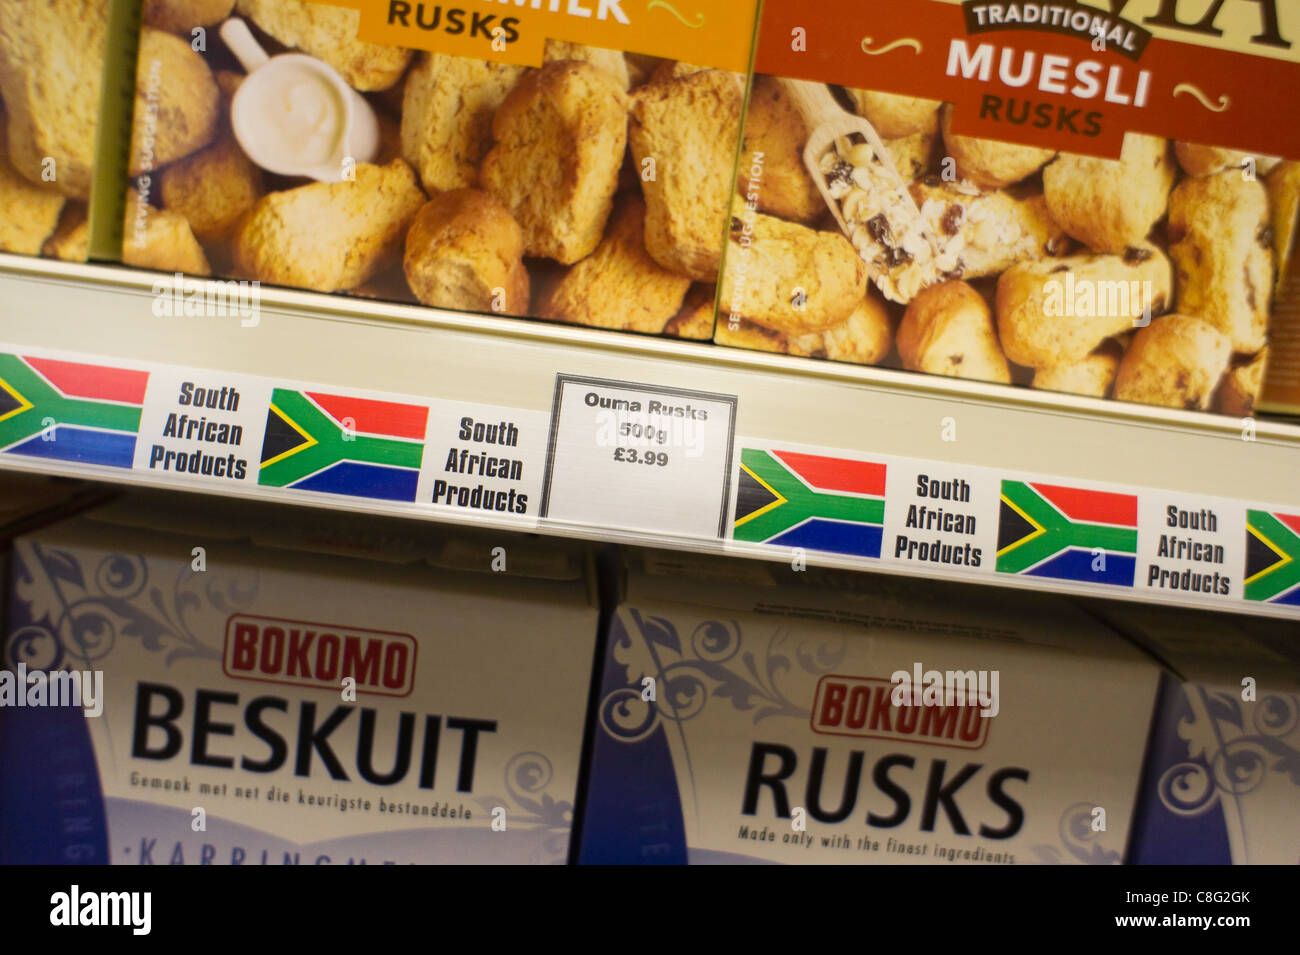 Productos alimenticios de Sudáfrica en una tienda del Reino Unido, Londres, 2011 Foto de stock